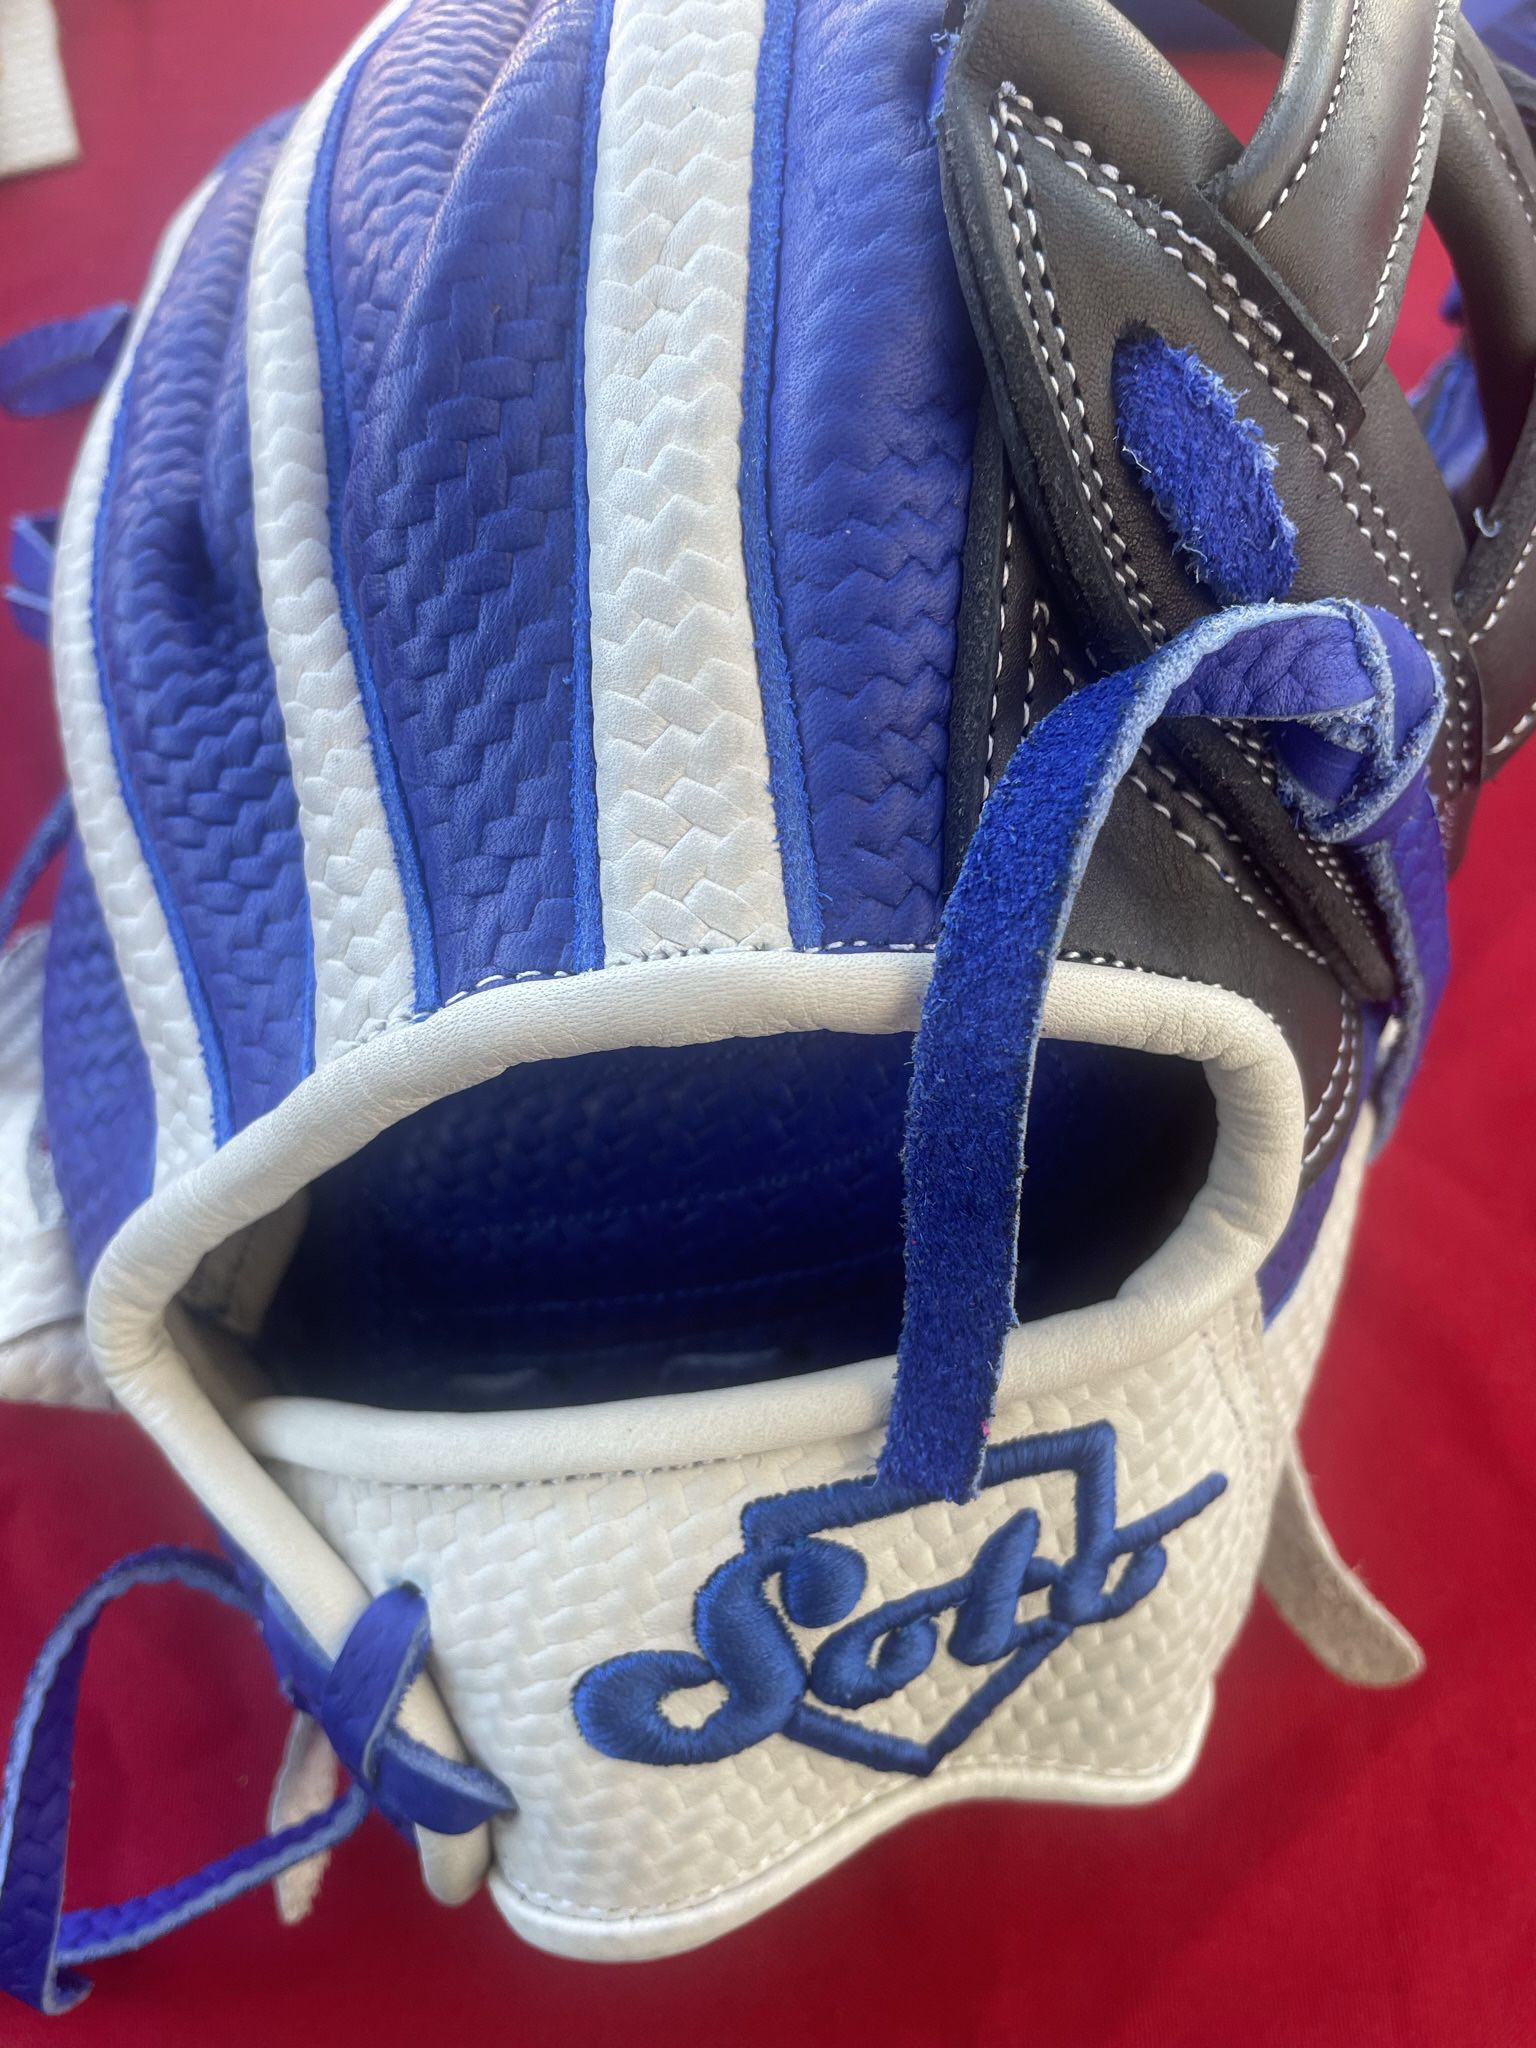 Baseball Glove/ Softball Glove